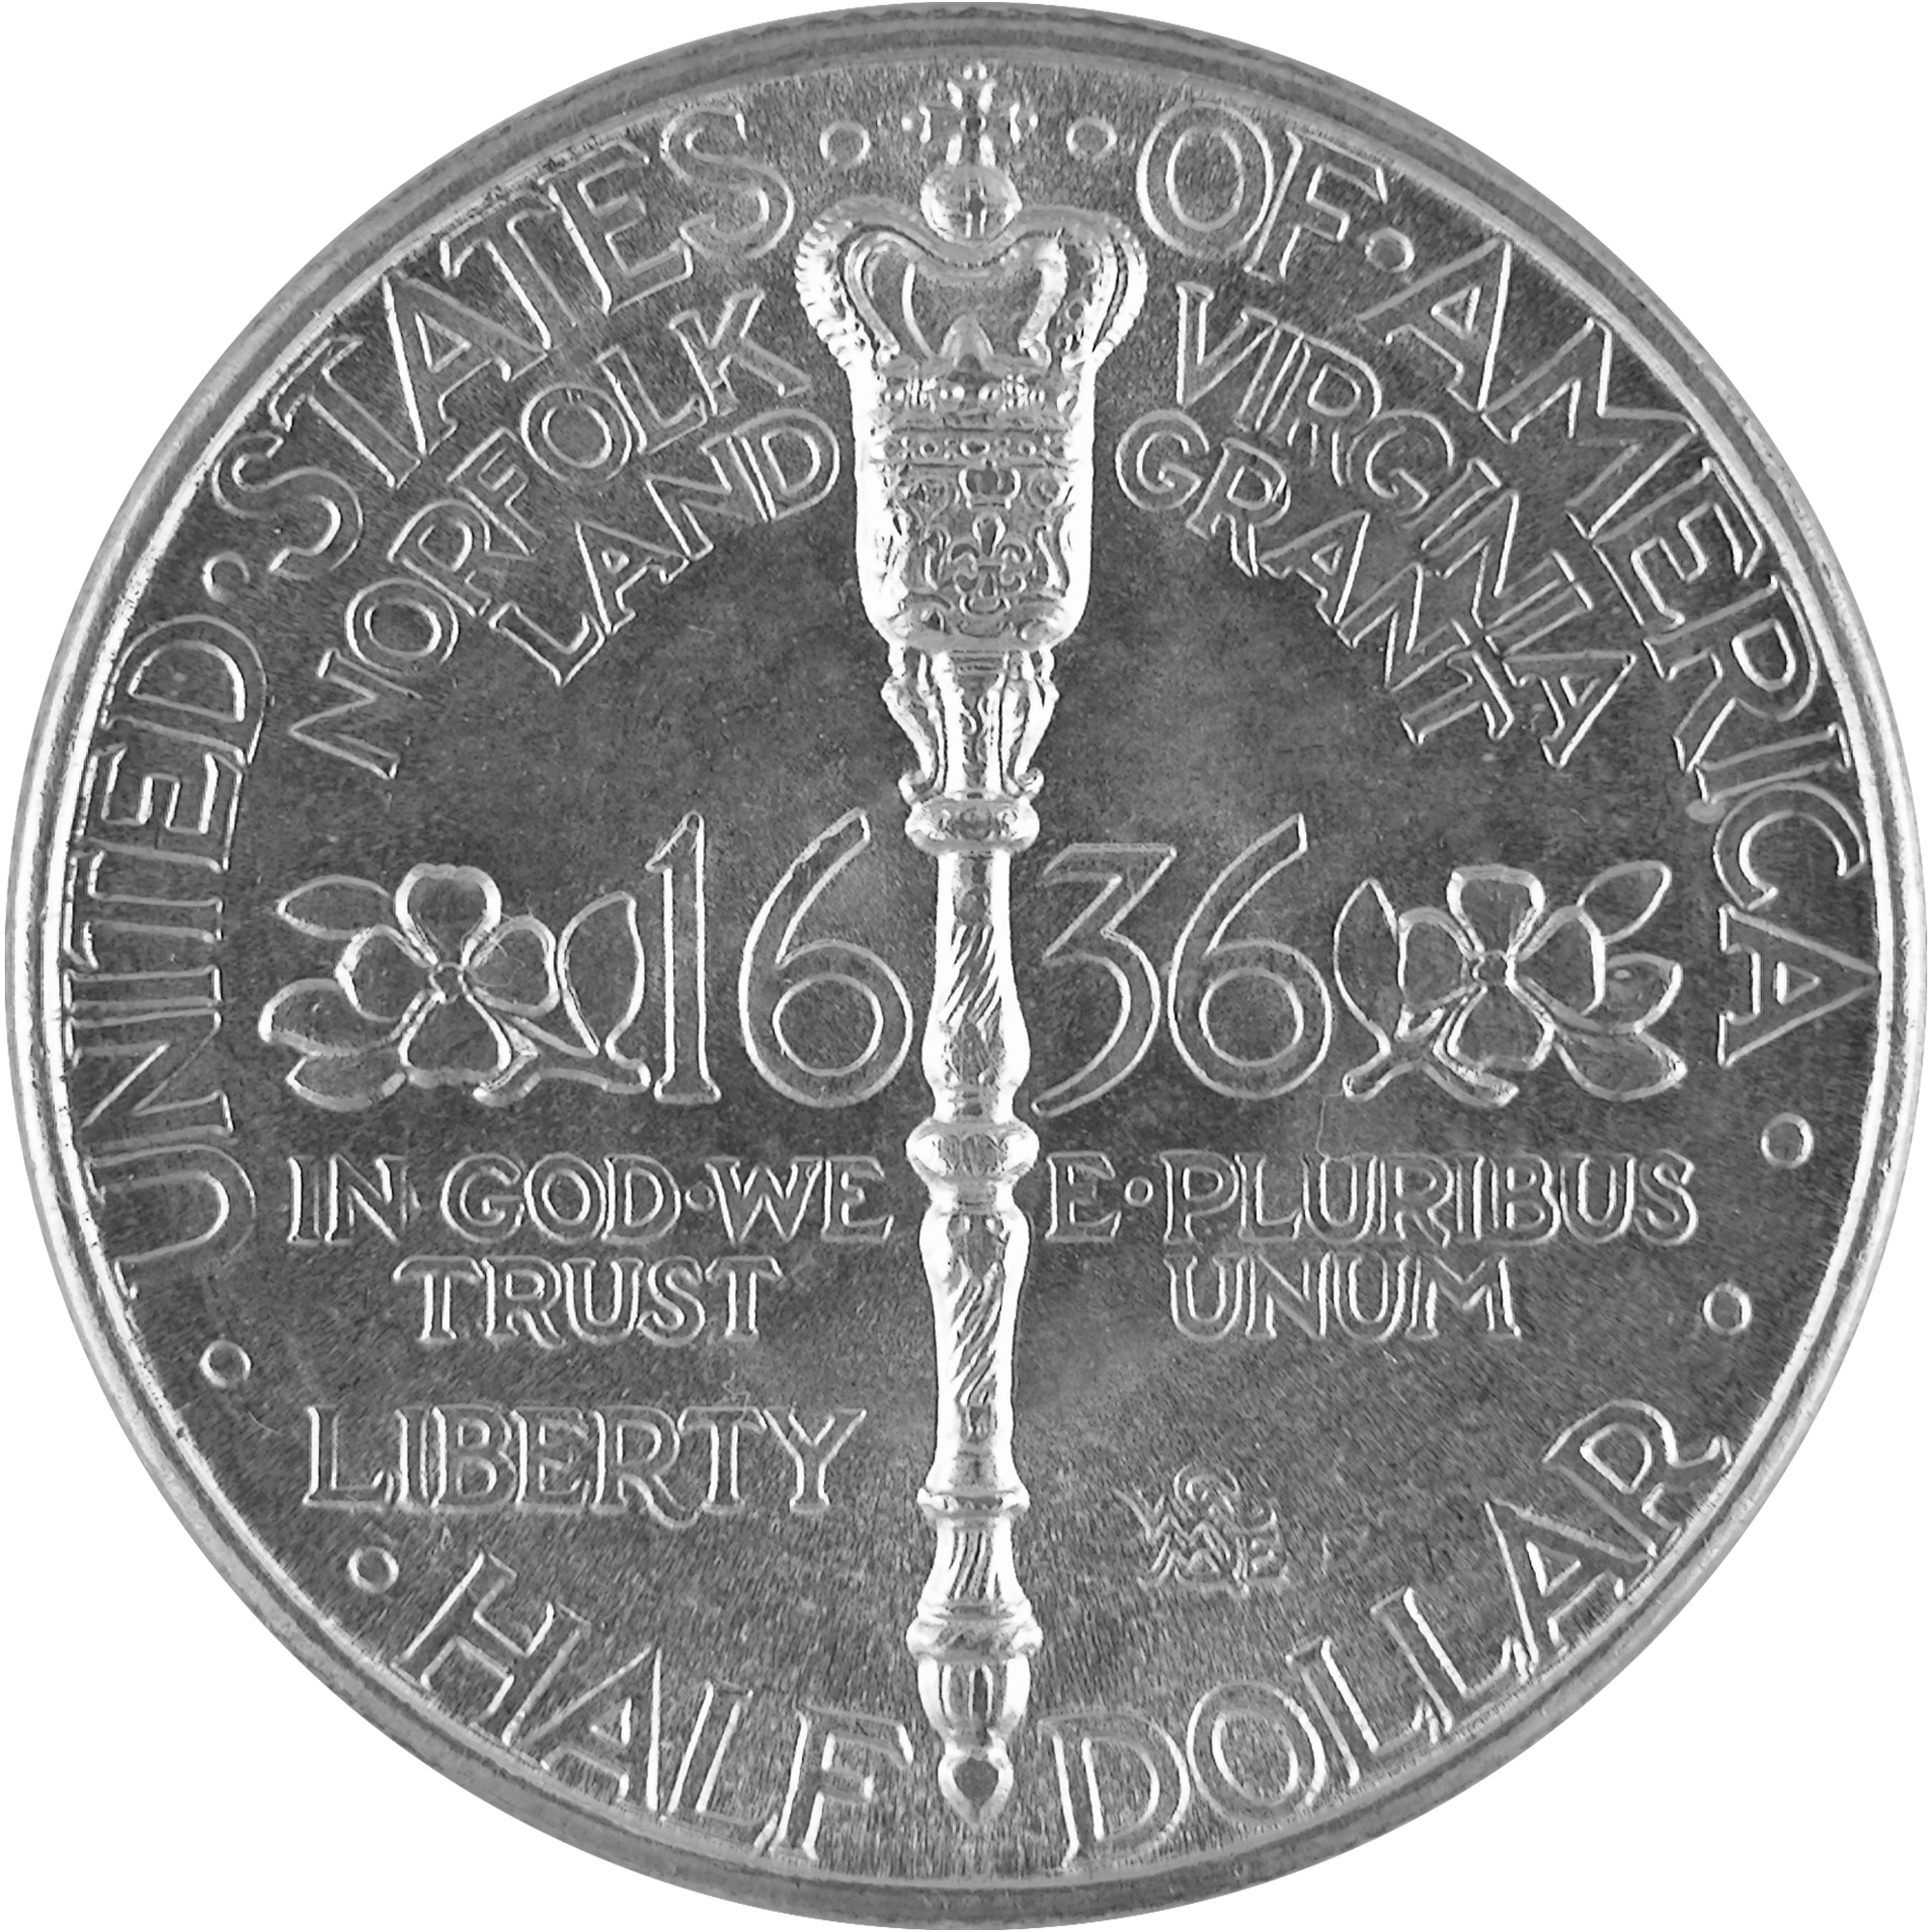 1936 Norfolk Virginia Bicentennial Commemorative Silver Half Dollar Coin Reverse